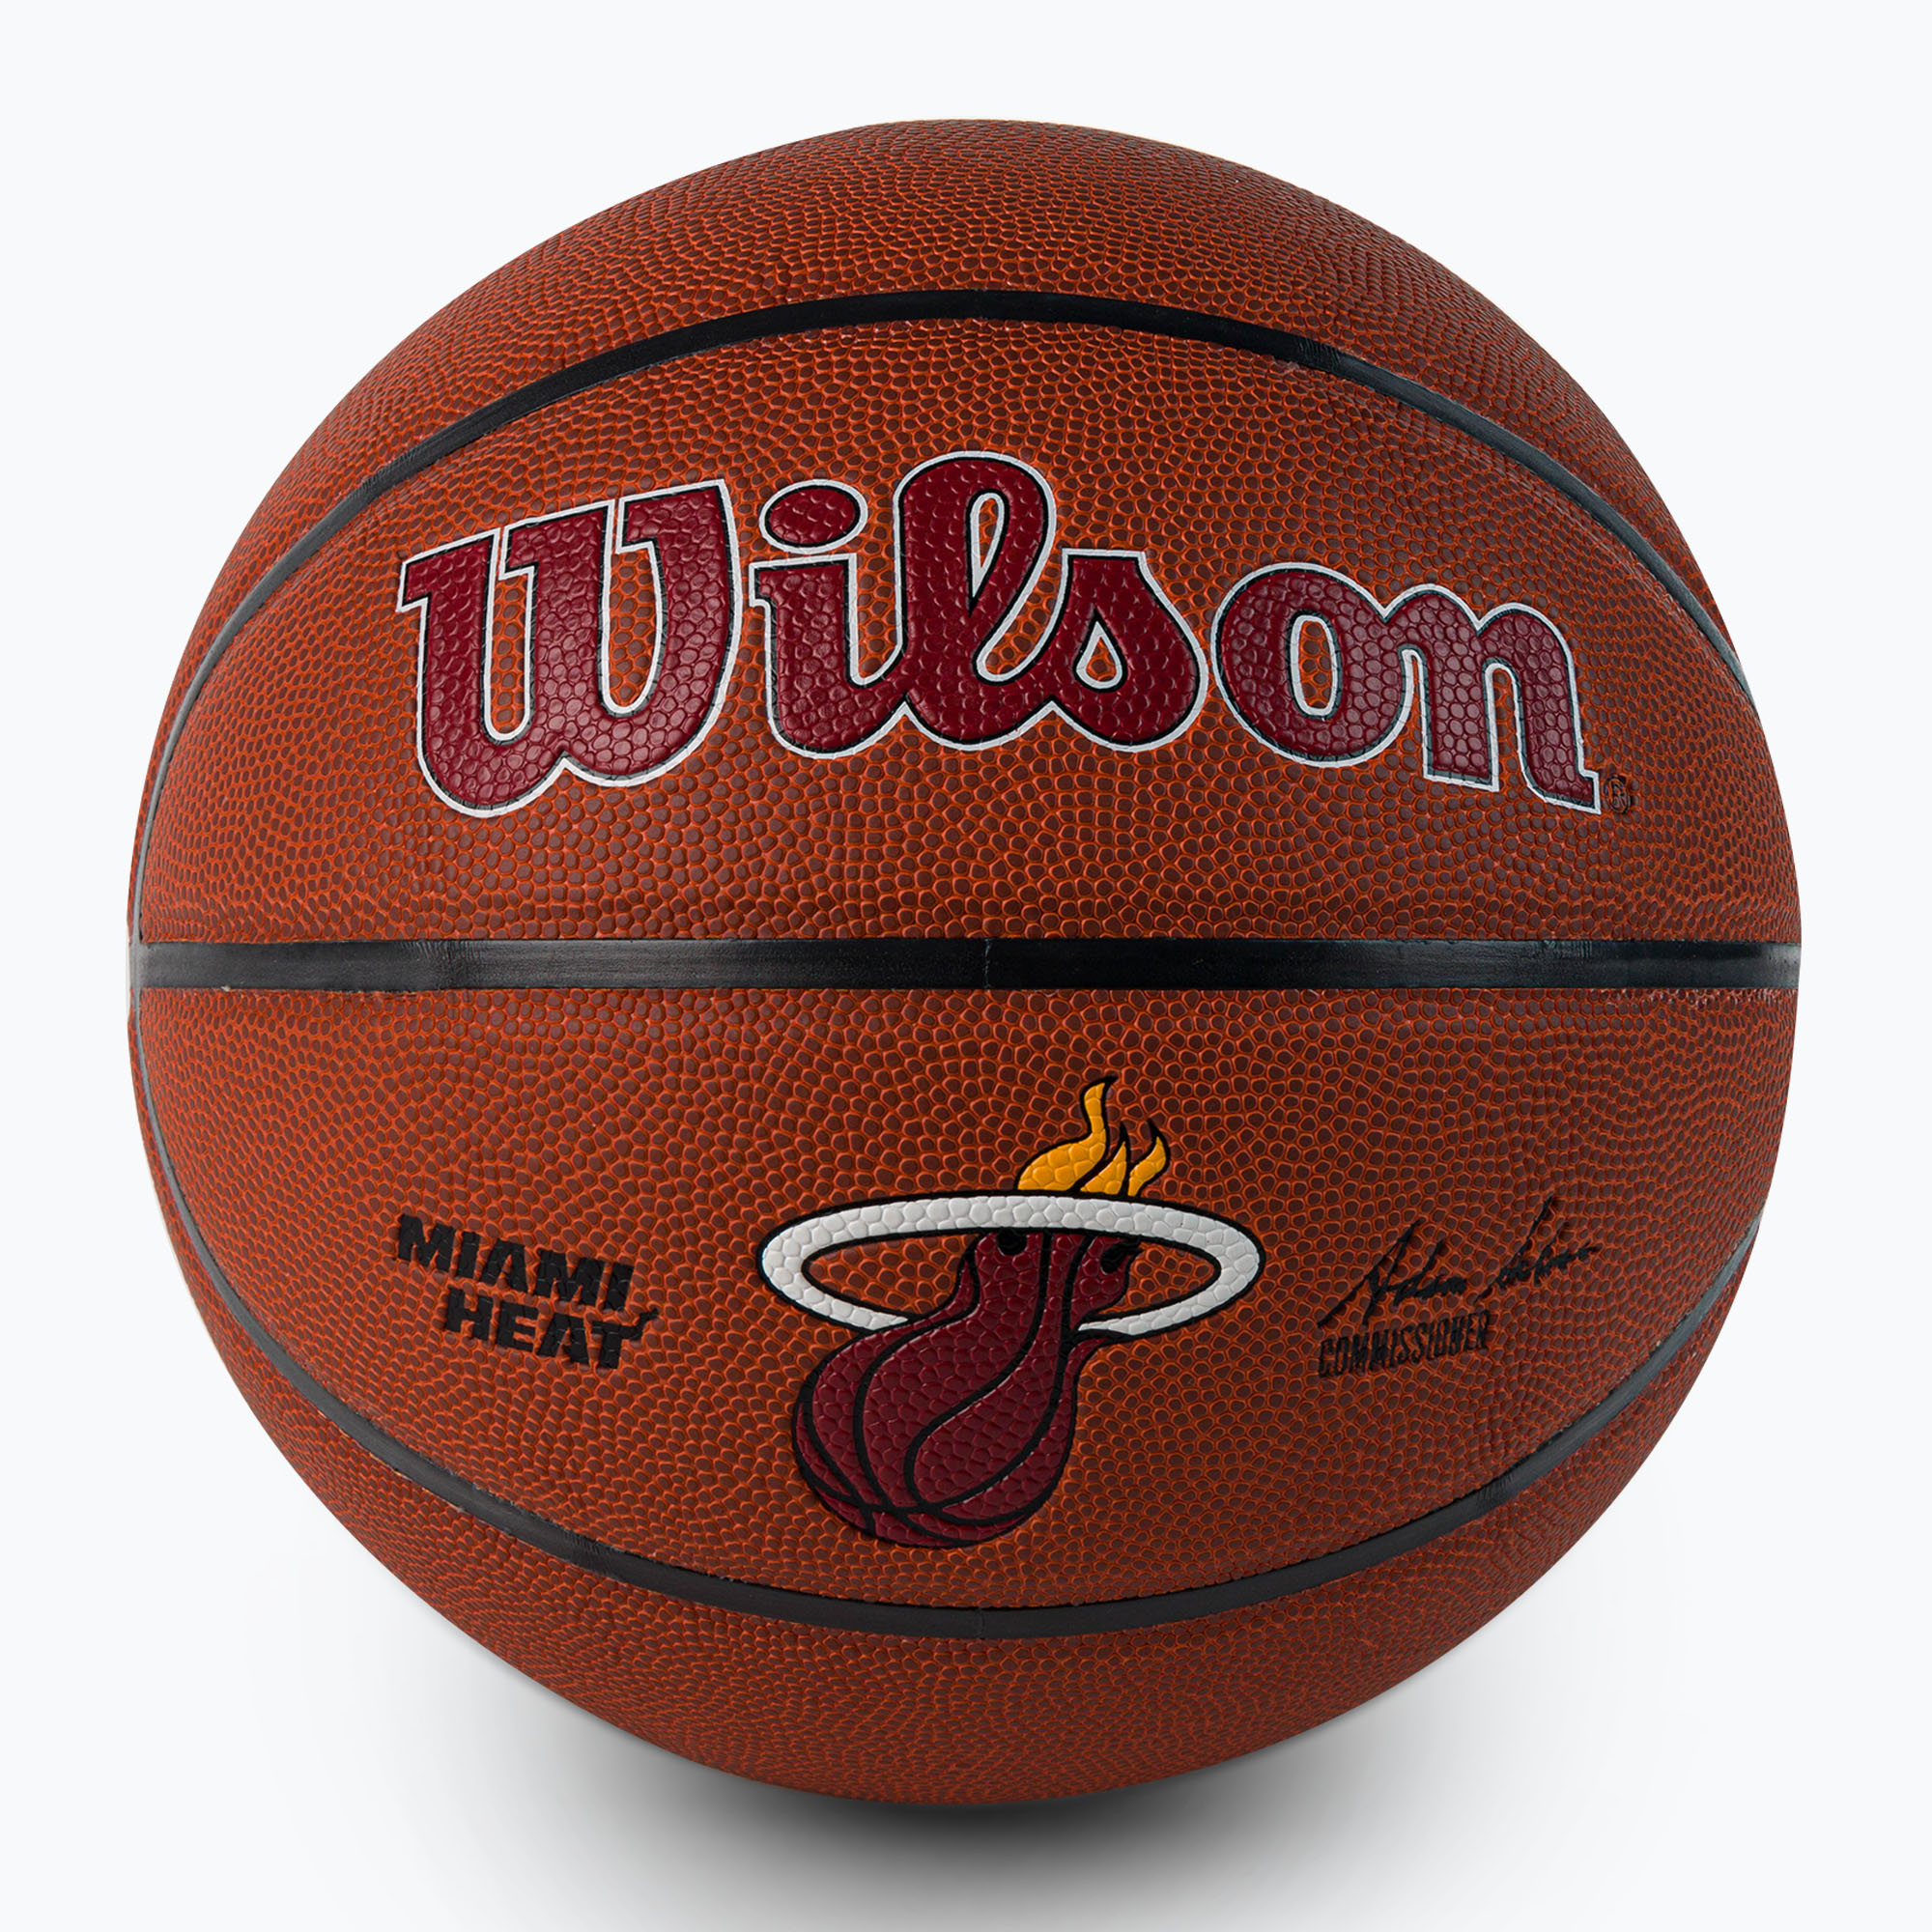 Wilson NBA Team Alliance Miami Heat basketbalová hnedá WTB3100XBMIA veľkosť 7